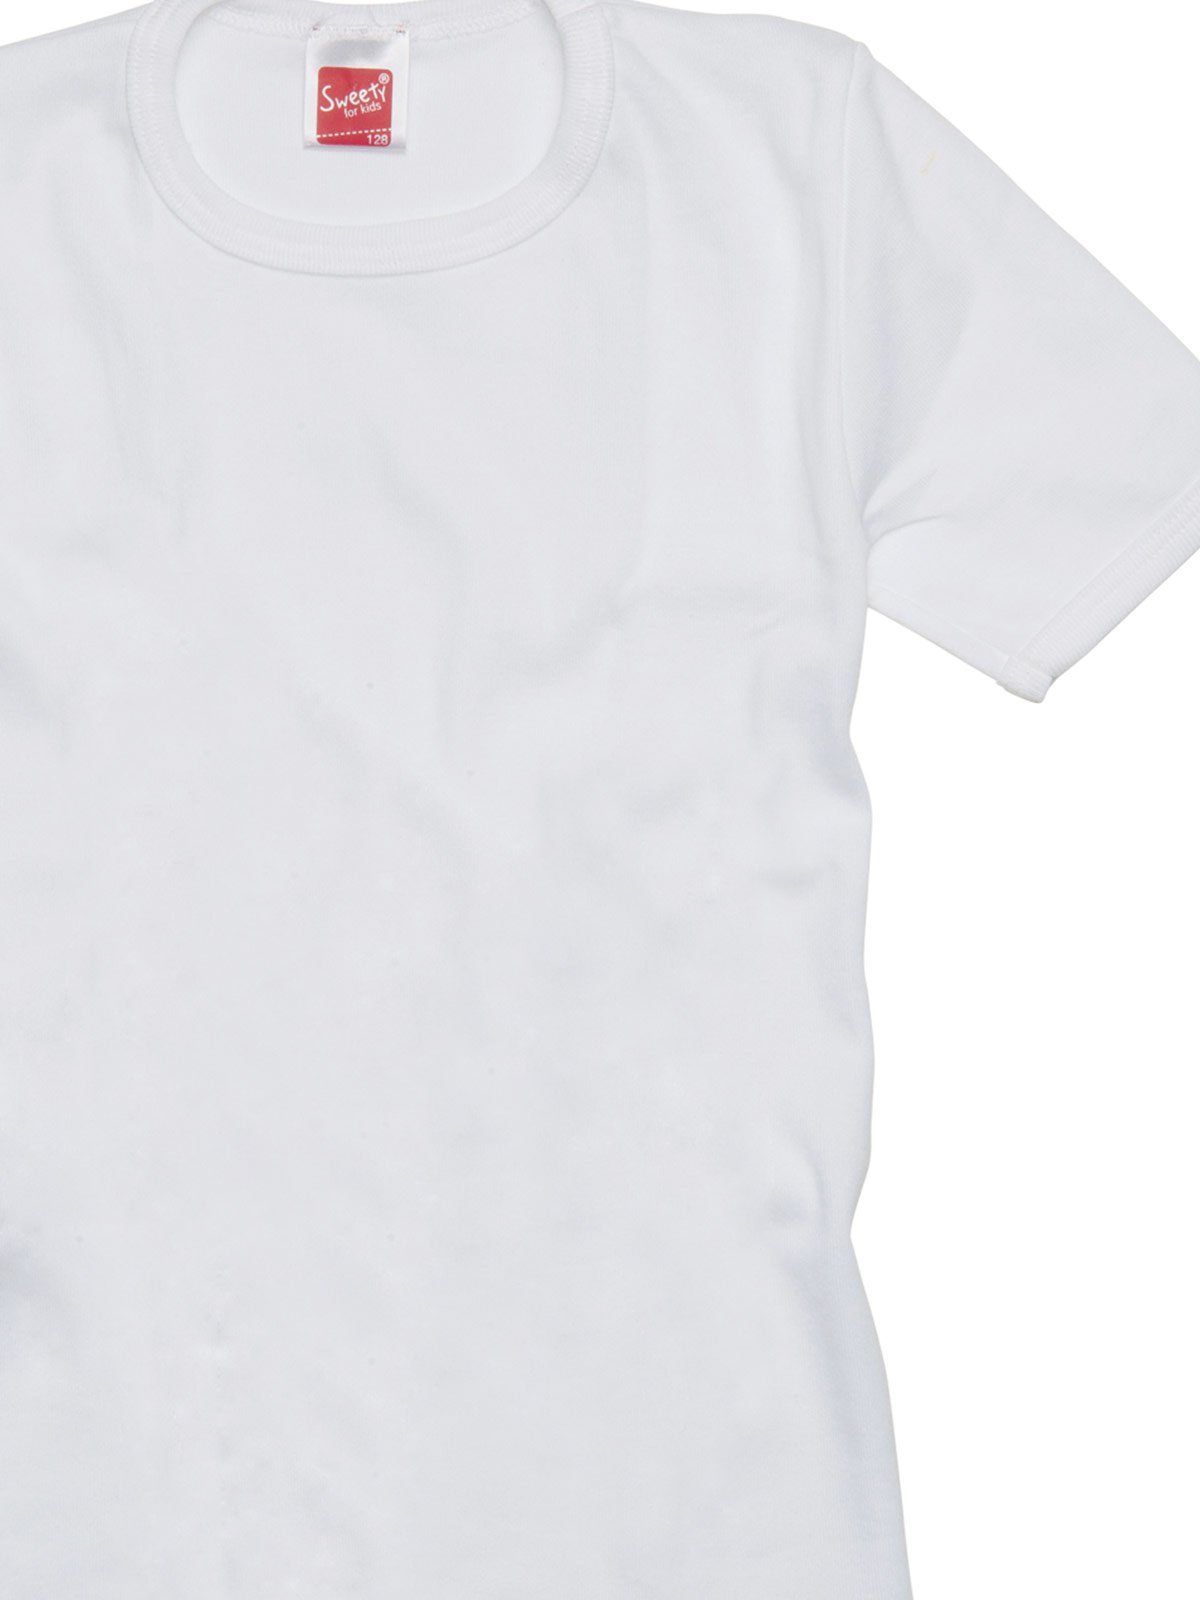 Sweety Kinder Sparpack Kids Achselhemd weiss Shirt (Spar-Set, 2-St) 2er hohe for Winterwäsche Markenqualität